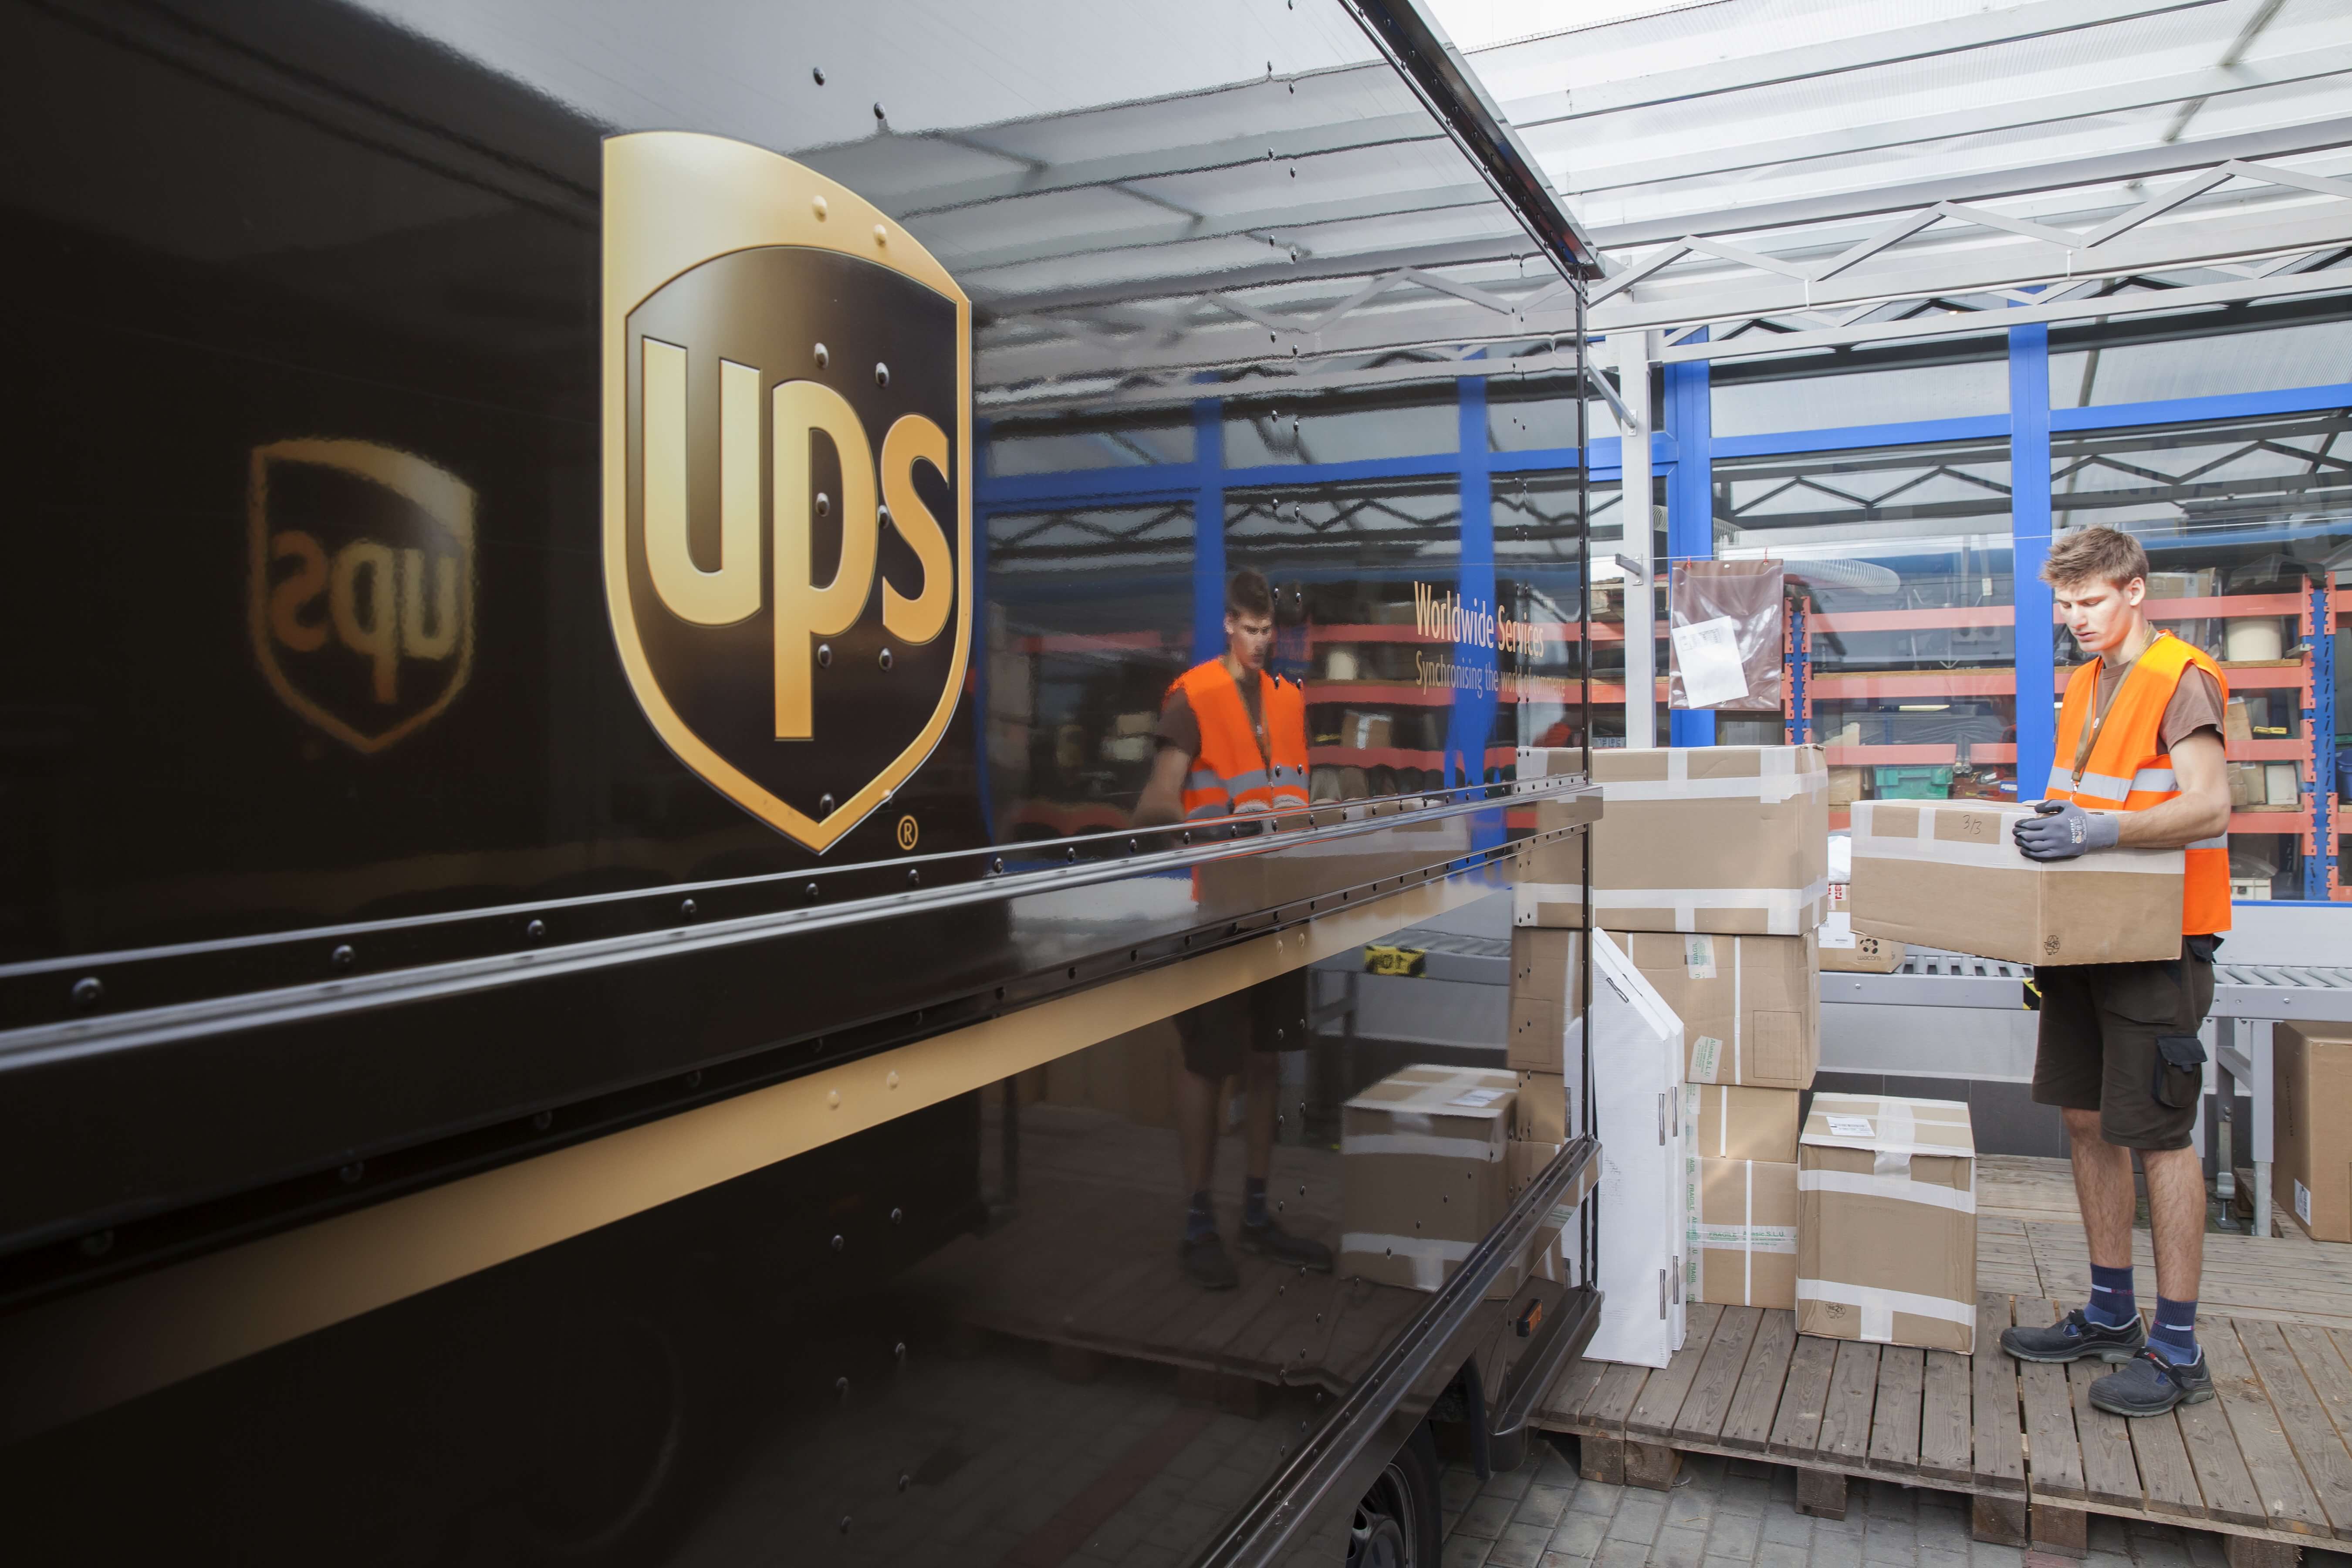 UPS Paket